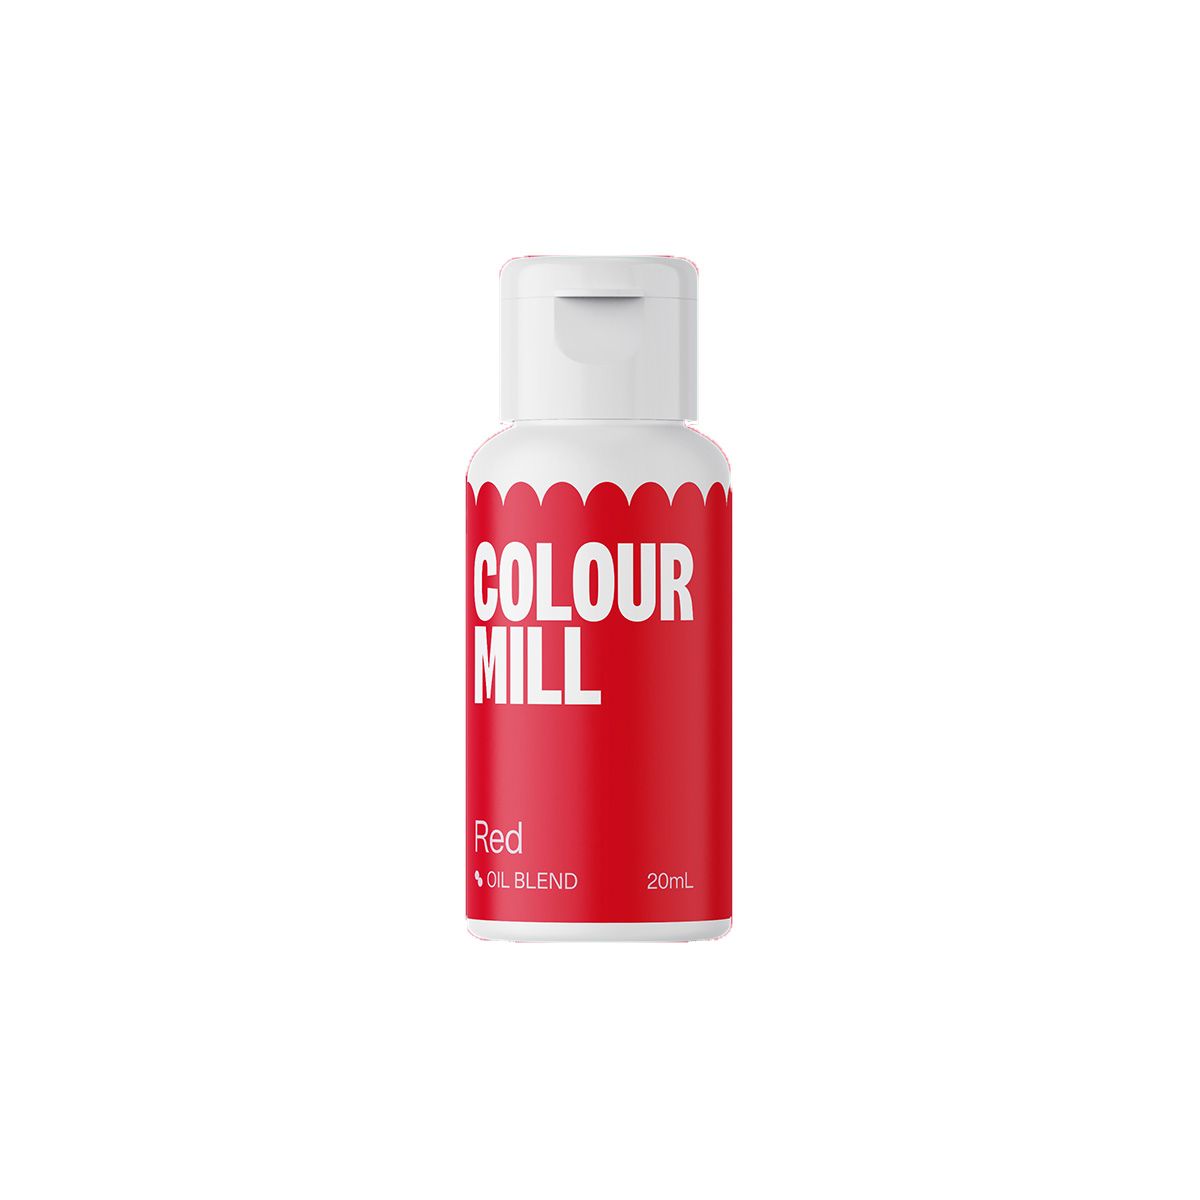 Colour Mill ölbasierte Lebensmittelfarbe - Rot - 20ml